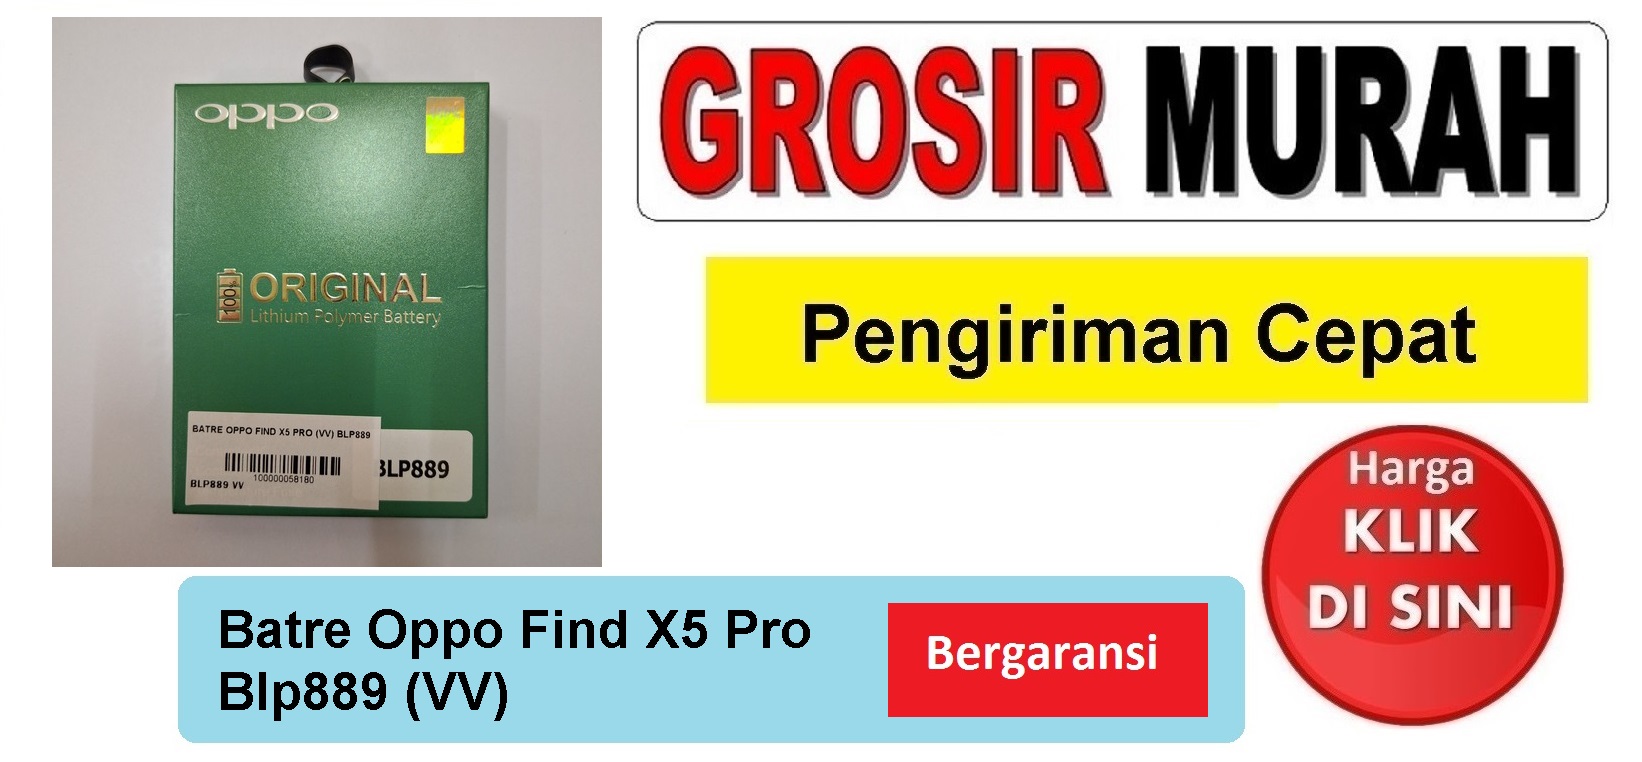 Pusat Penjualan Batre Oppo Find X5 Pro (Vv) Blp889 Baterai Battery Bergaransi Batere Spare Part Hp Grosir